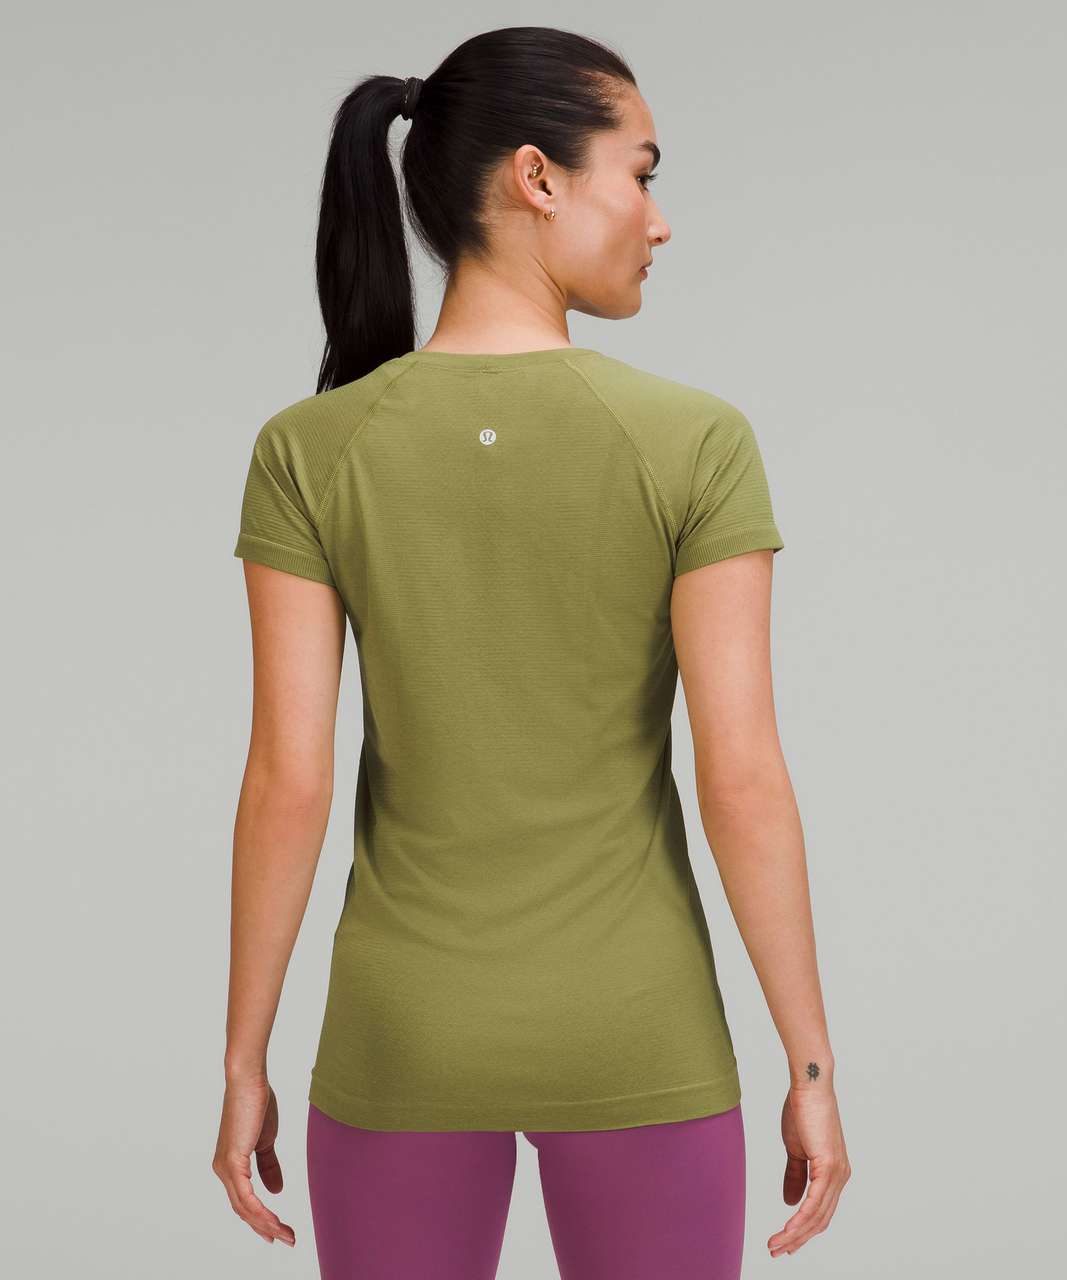 Lululemon Swiftly Tech Short Sleeve Shirt 2.0 - Bronze Green / Bronze Green